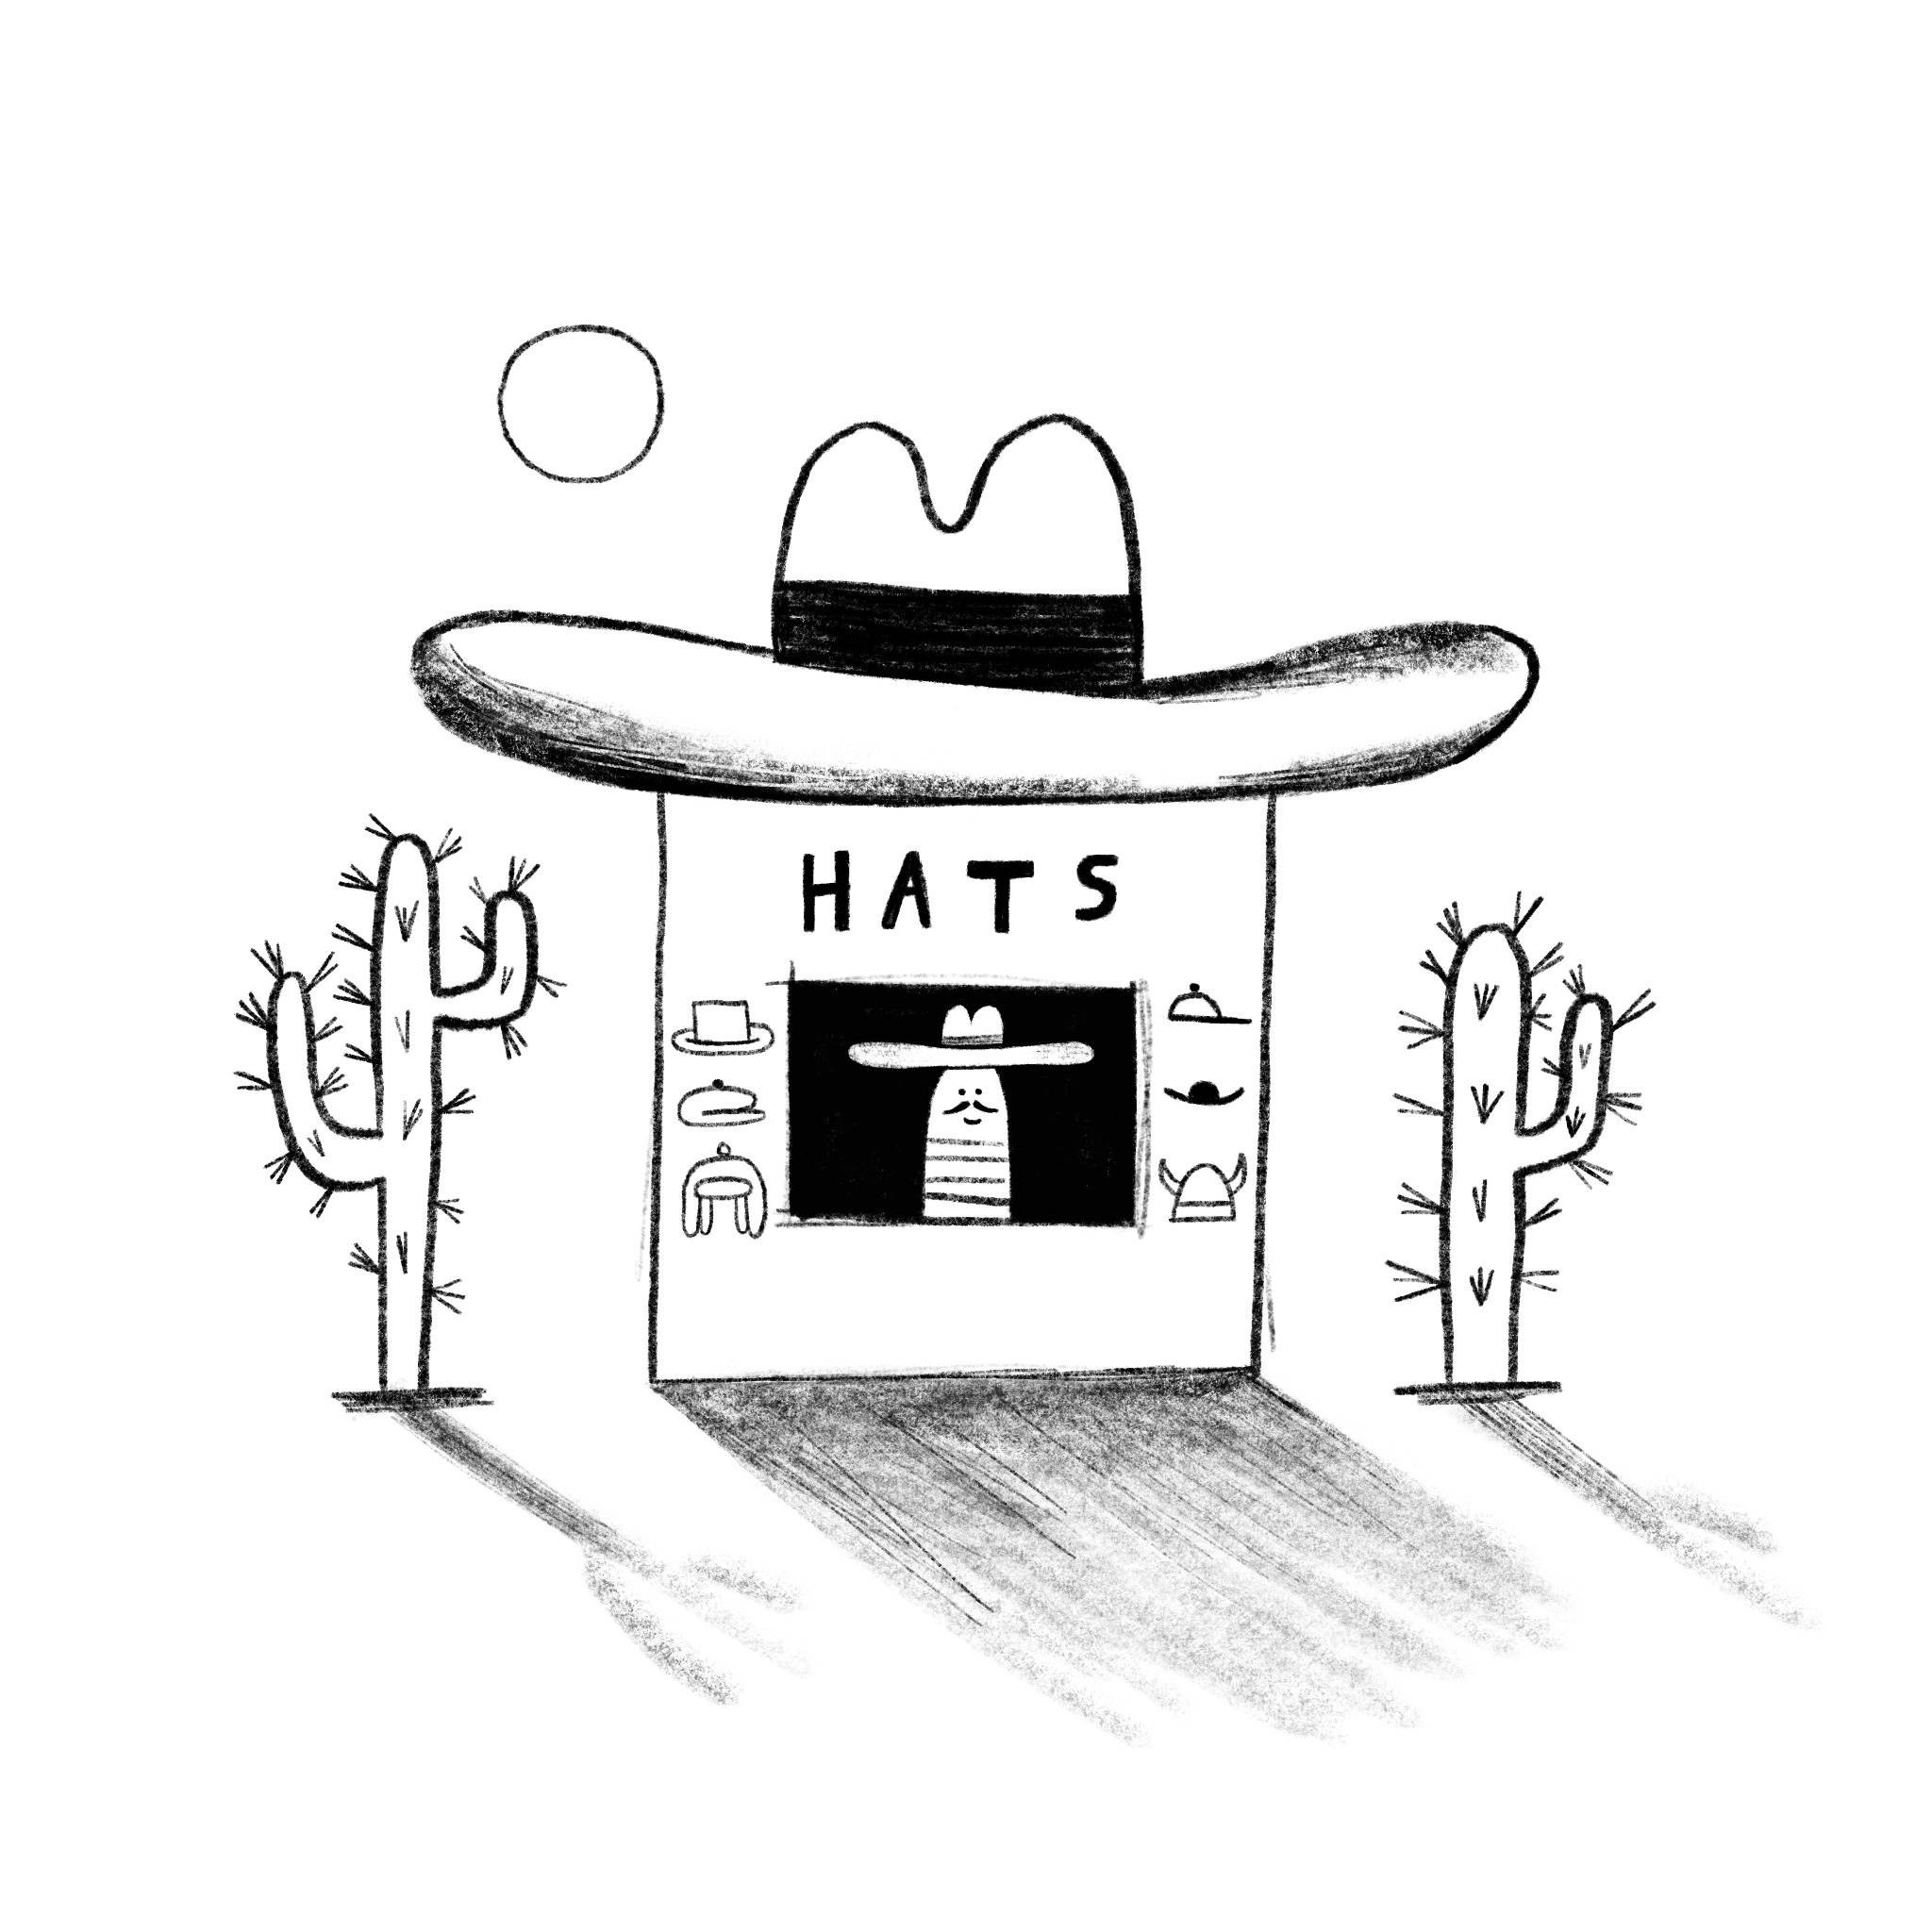 Uncle's hat shop